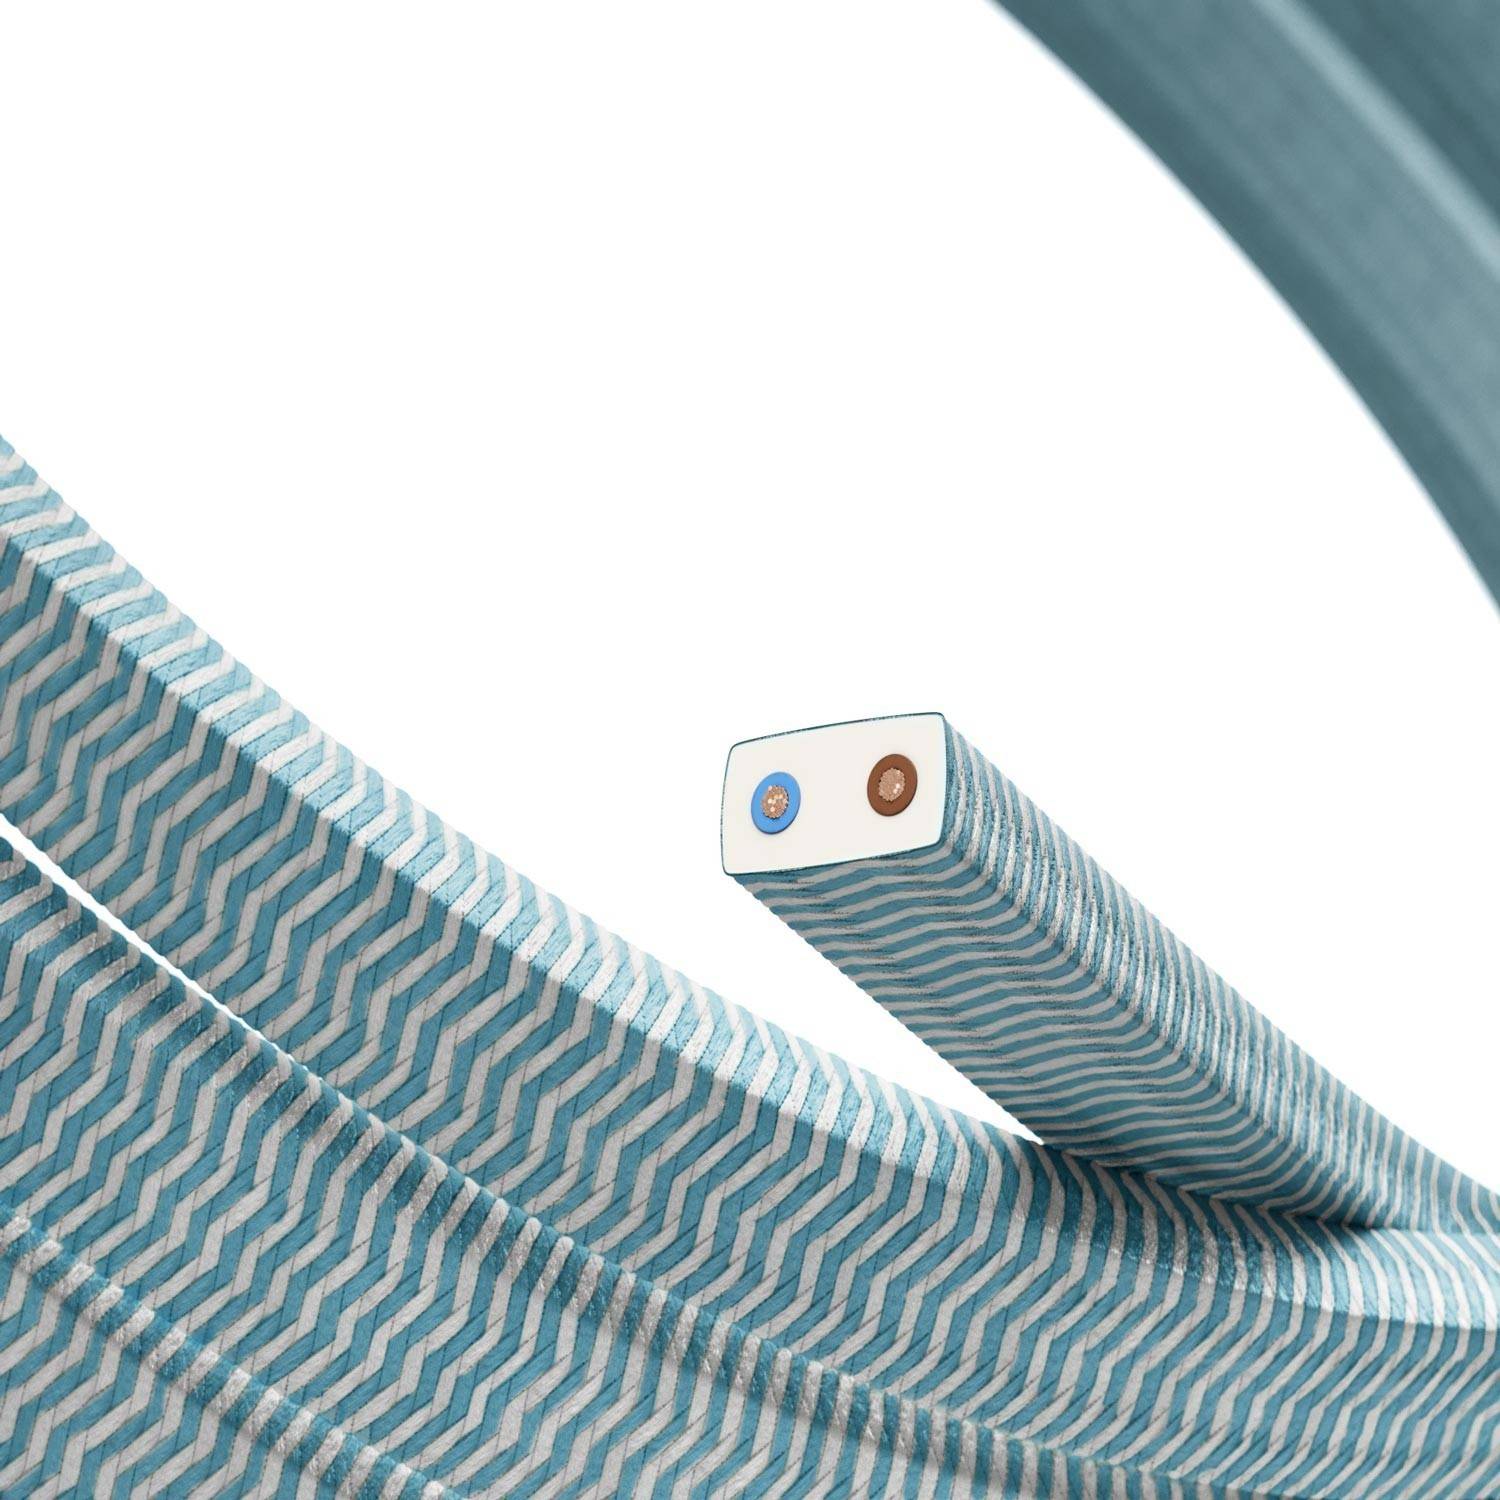 Elektrický kabel pro světelné řetězy, potažený tkaninou Rayon ZigZag bílo-tyrkysová CZ11 - UV odolný